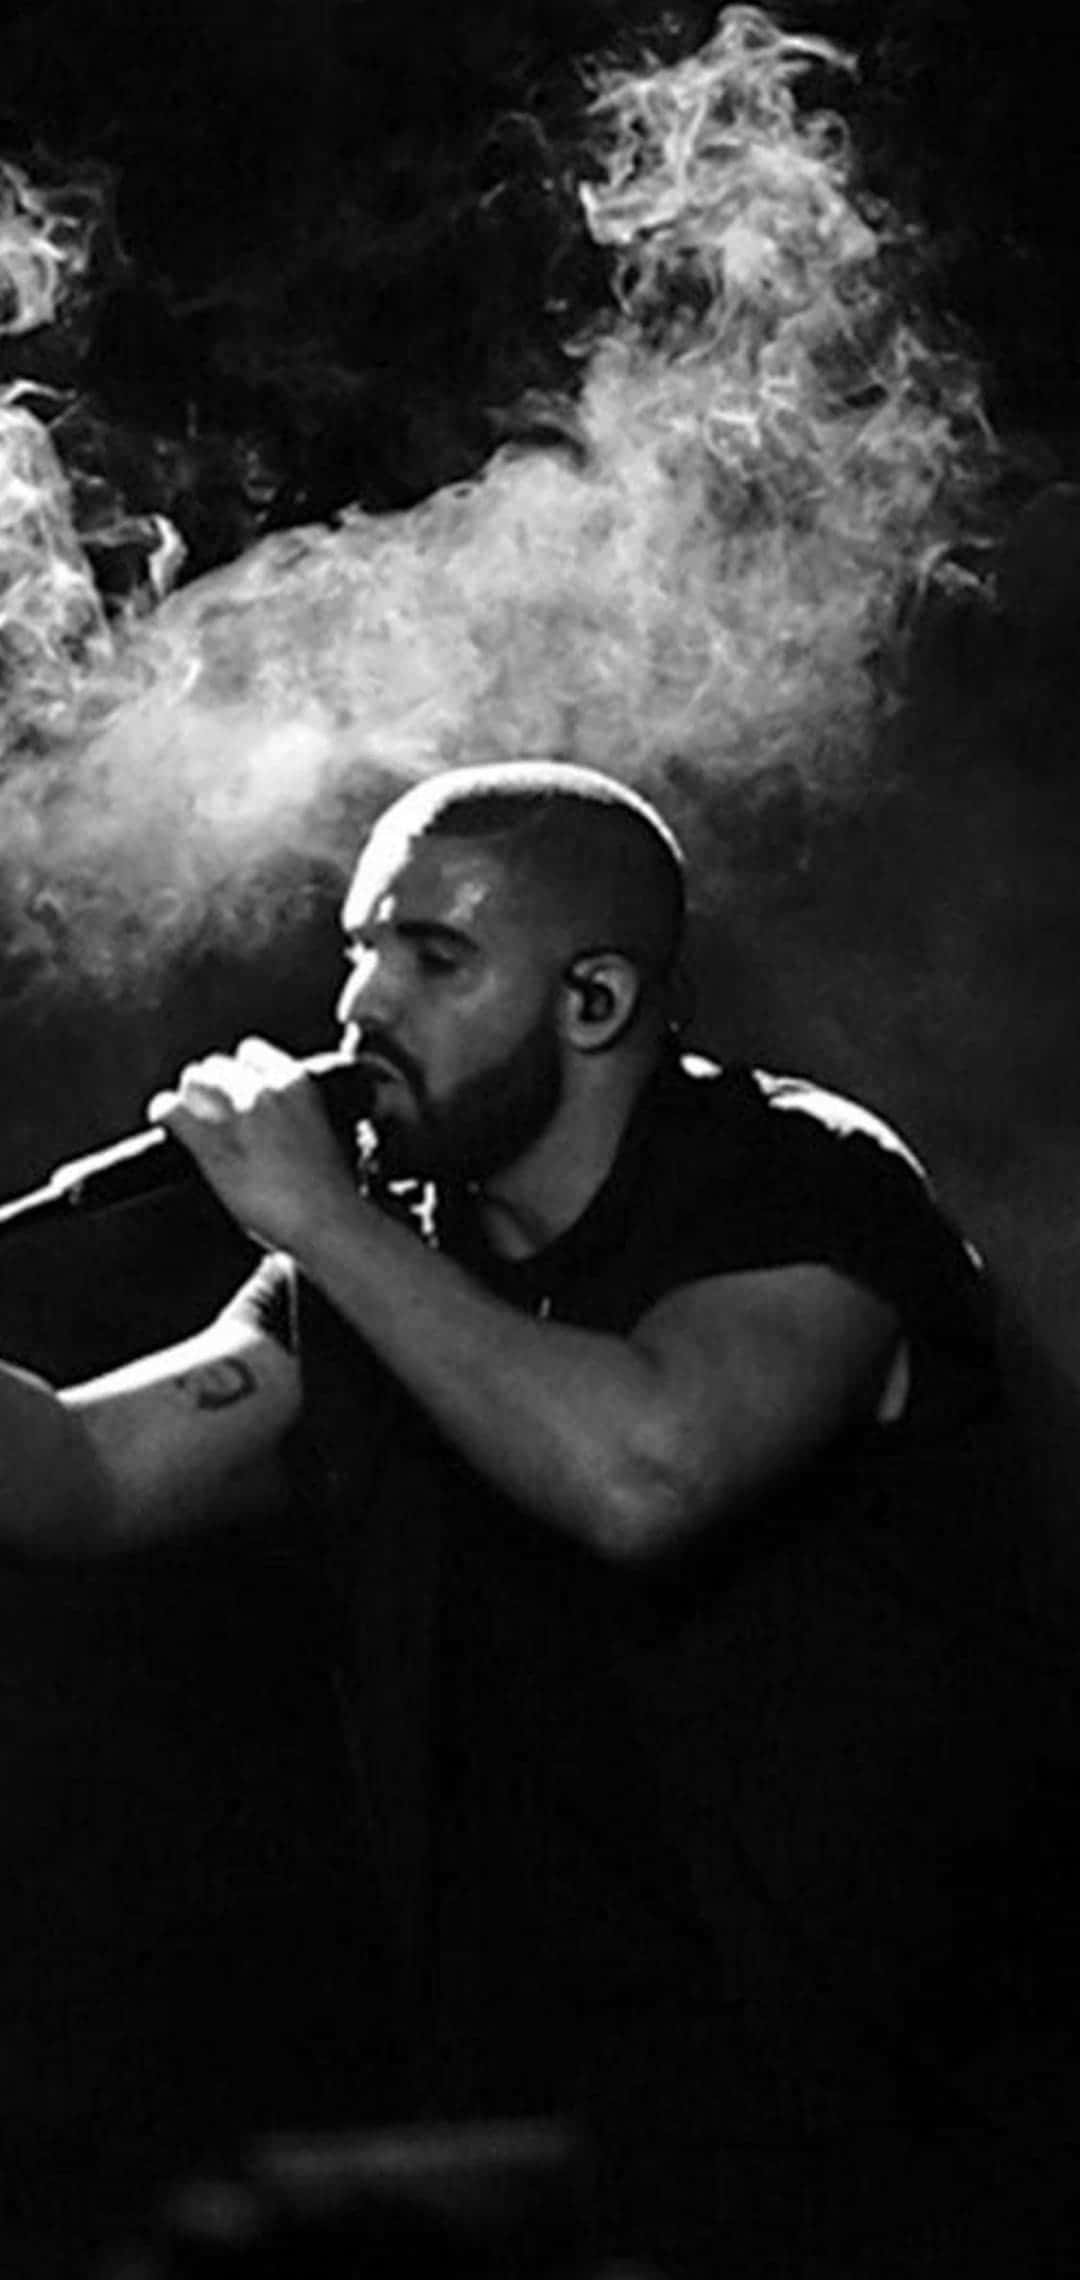 Drake looks good while making music. Wallpaper